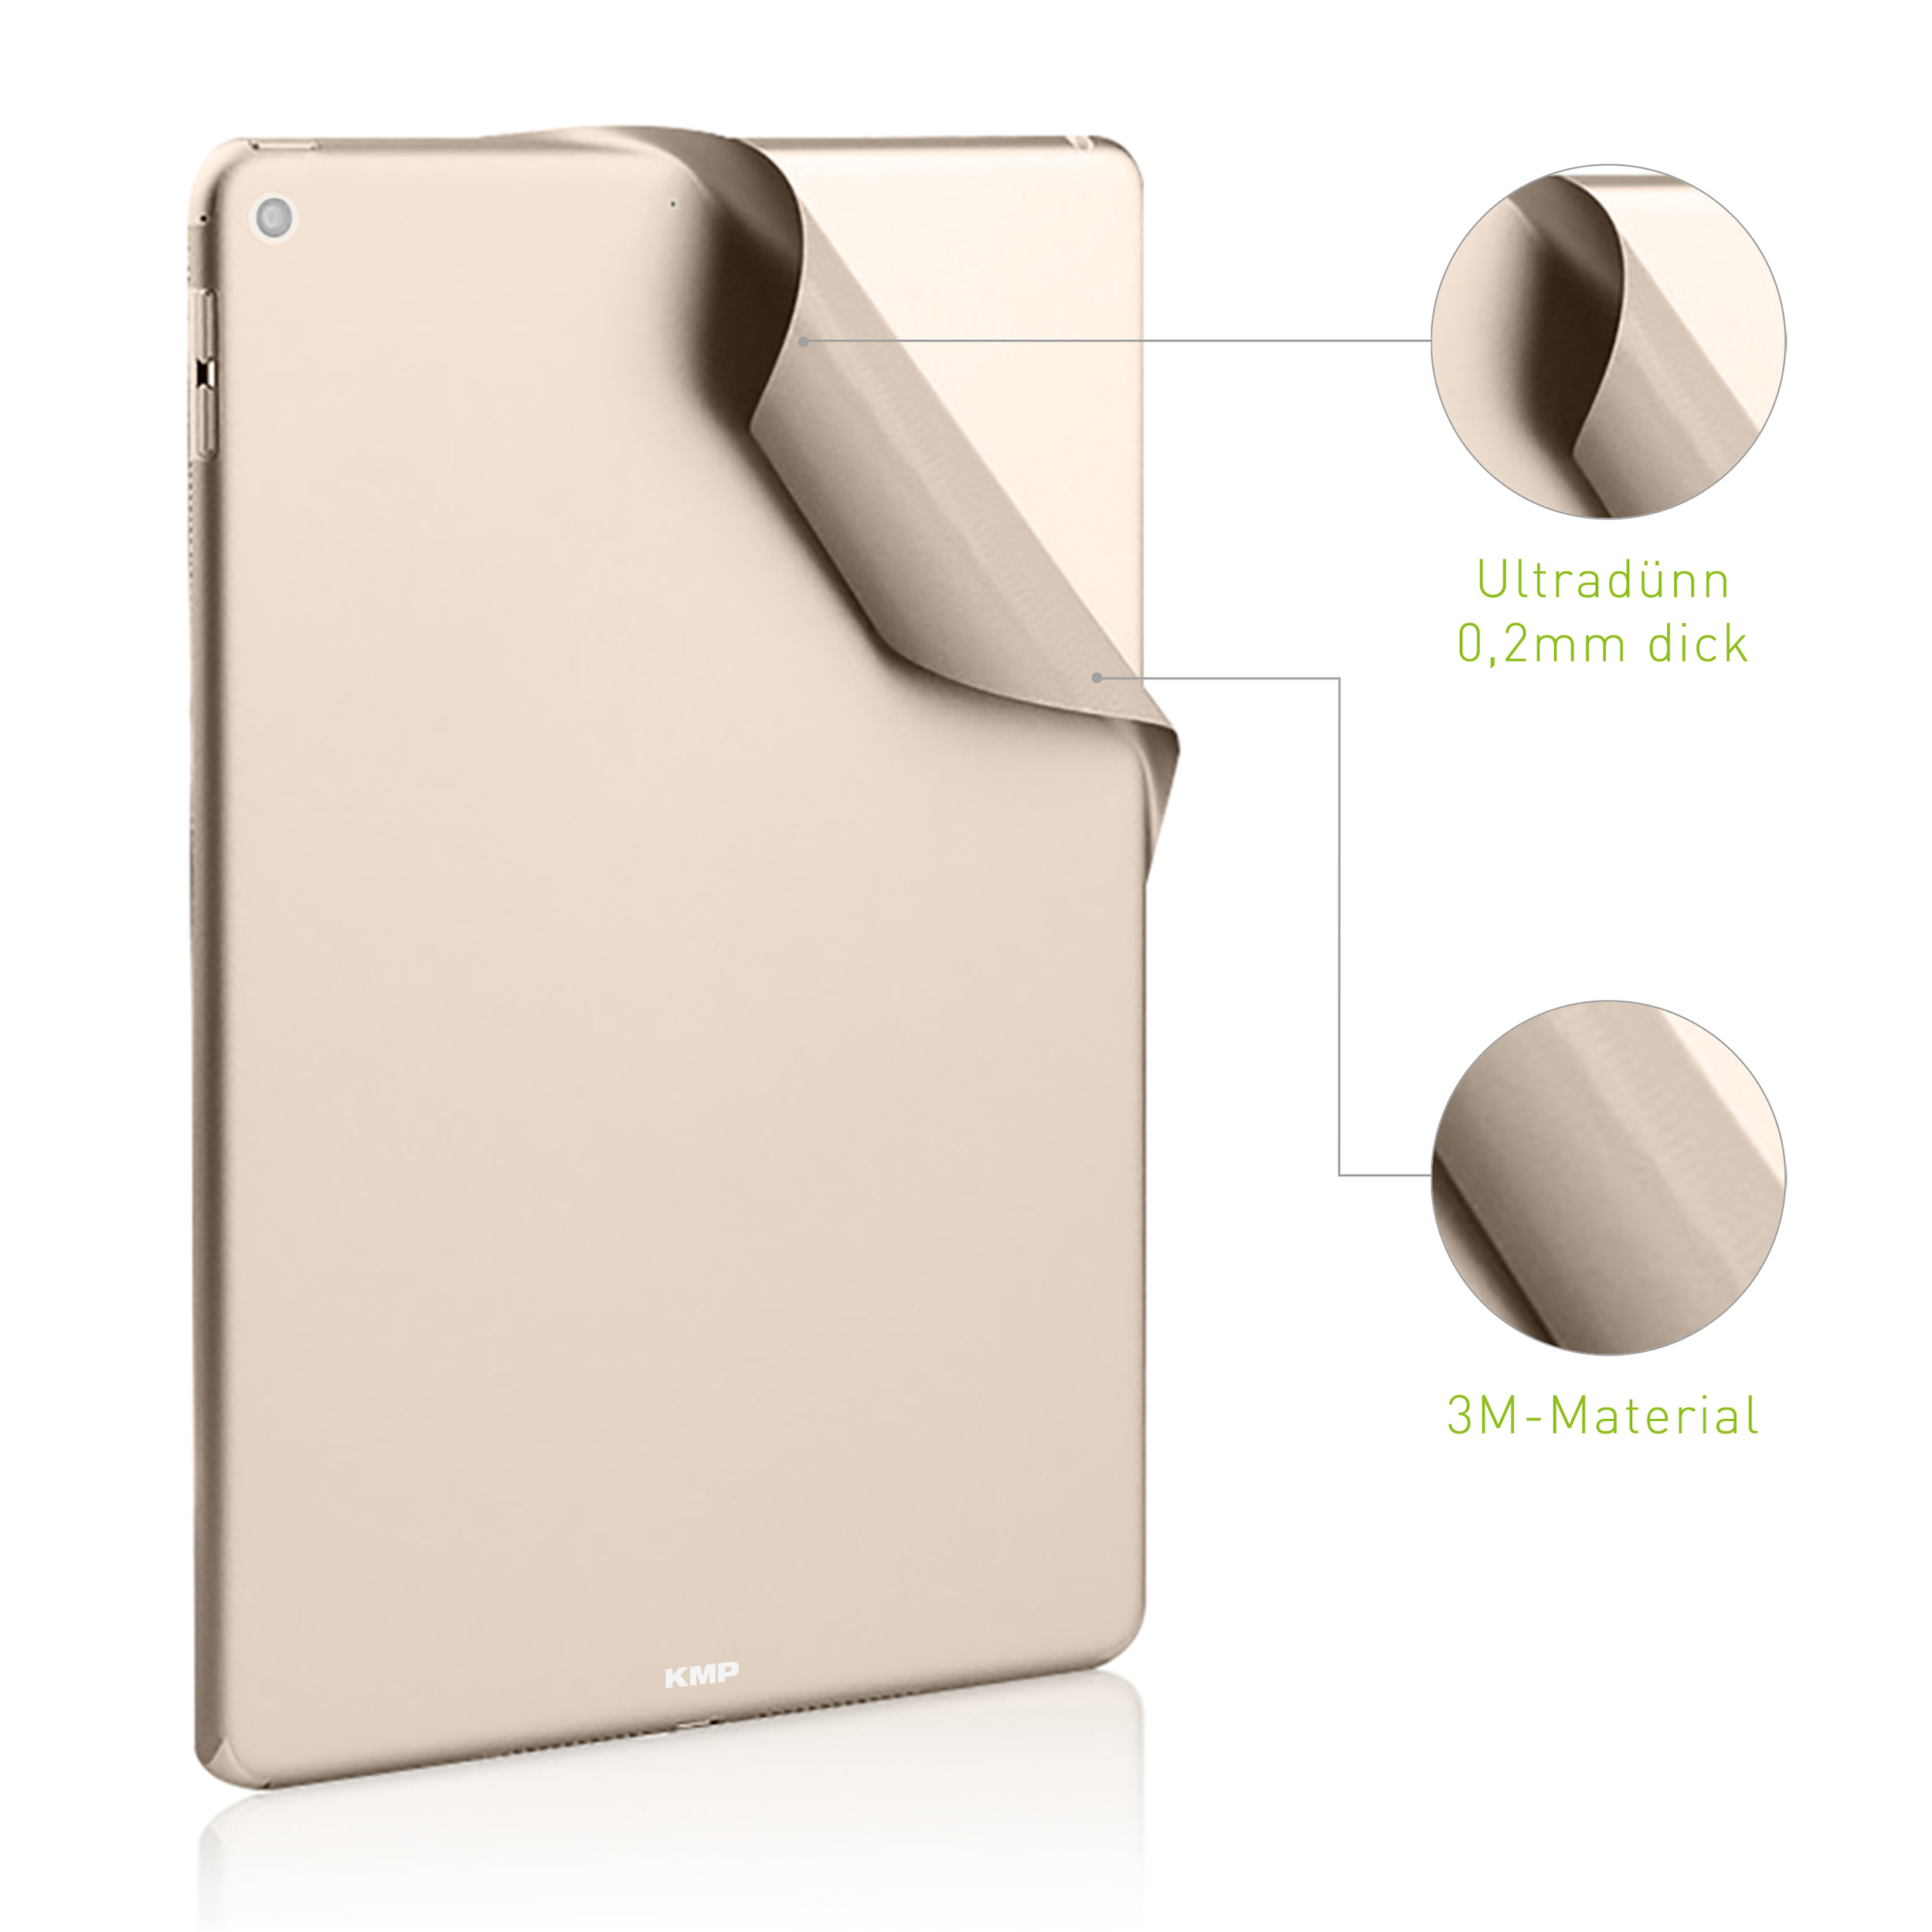 KMP Schutzfolie 3M-Material, Rückseite Apple 6H Cover 9,7\